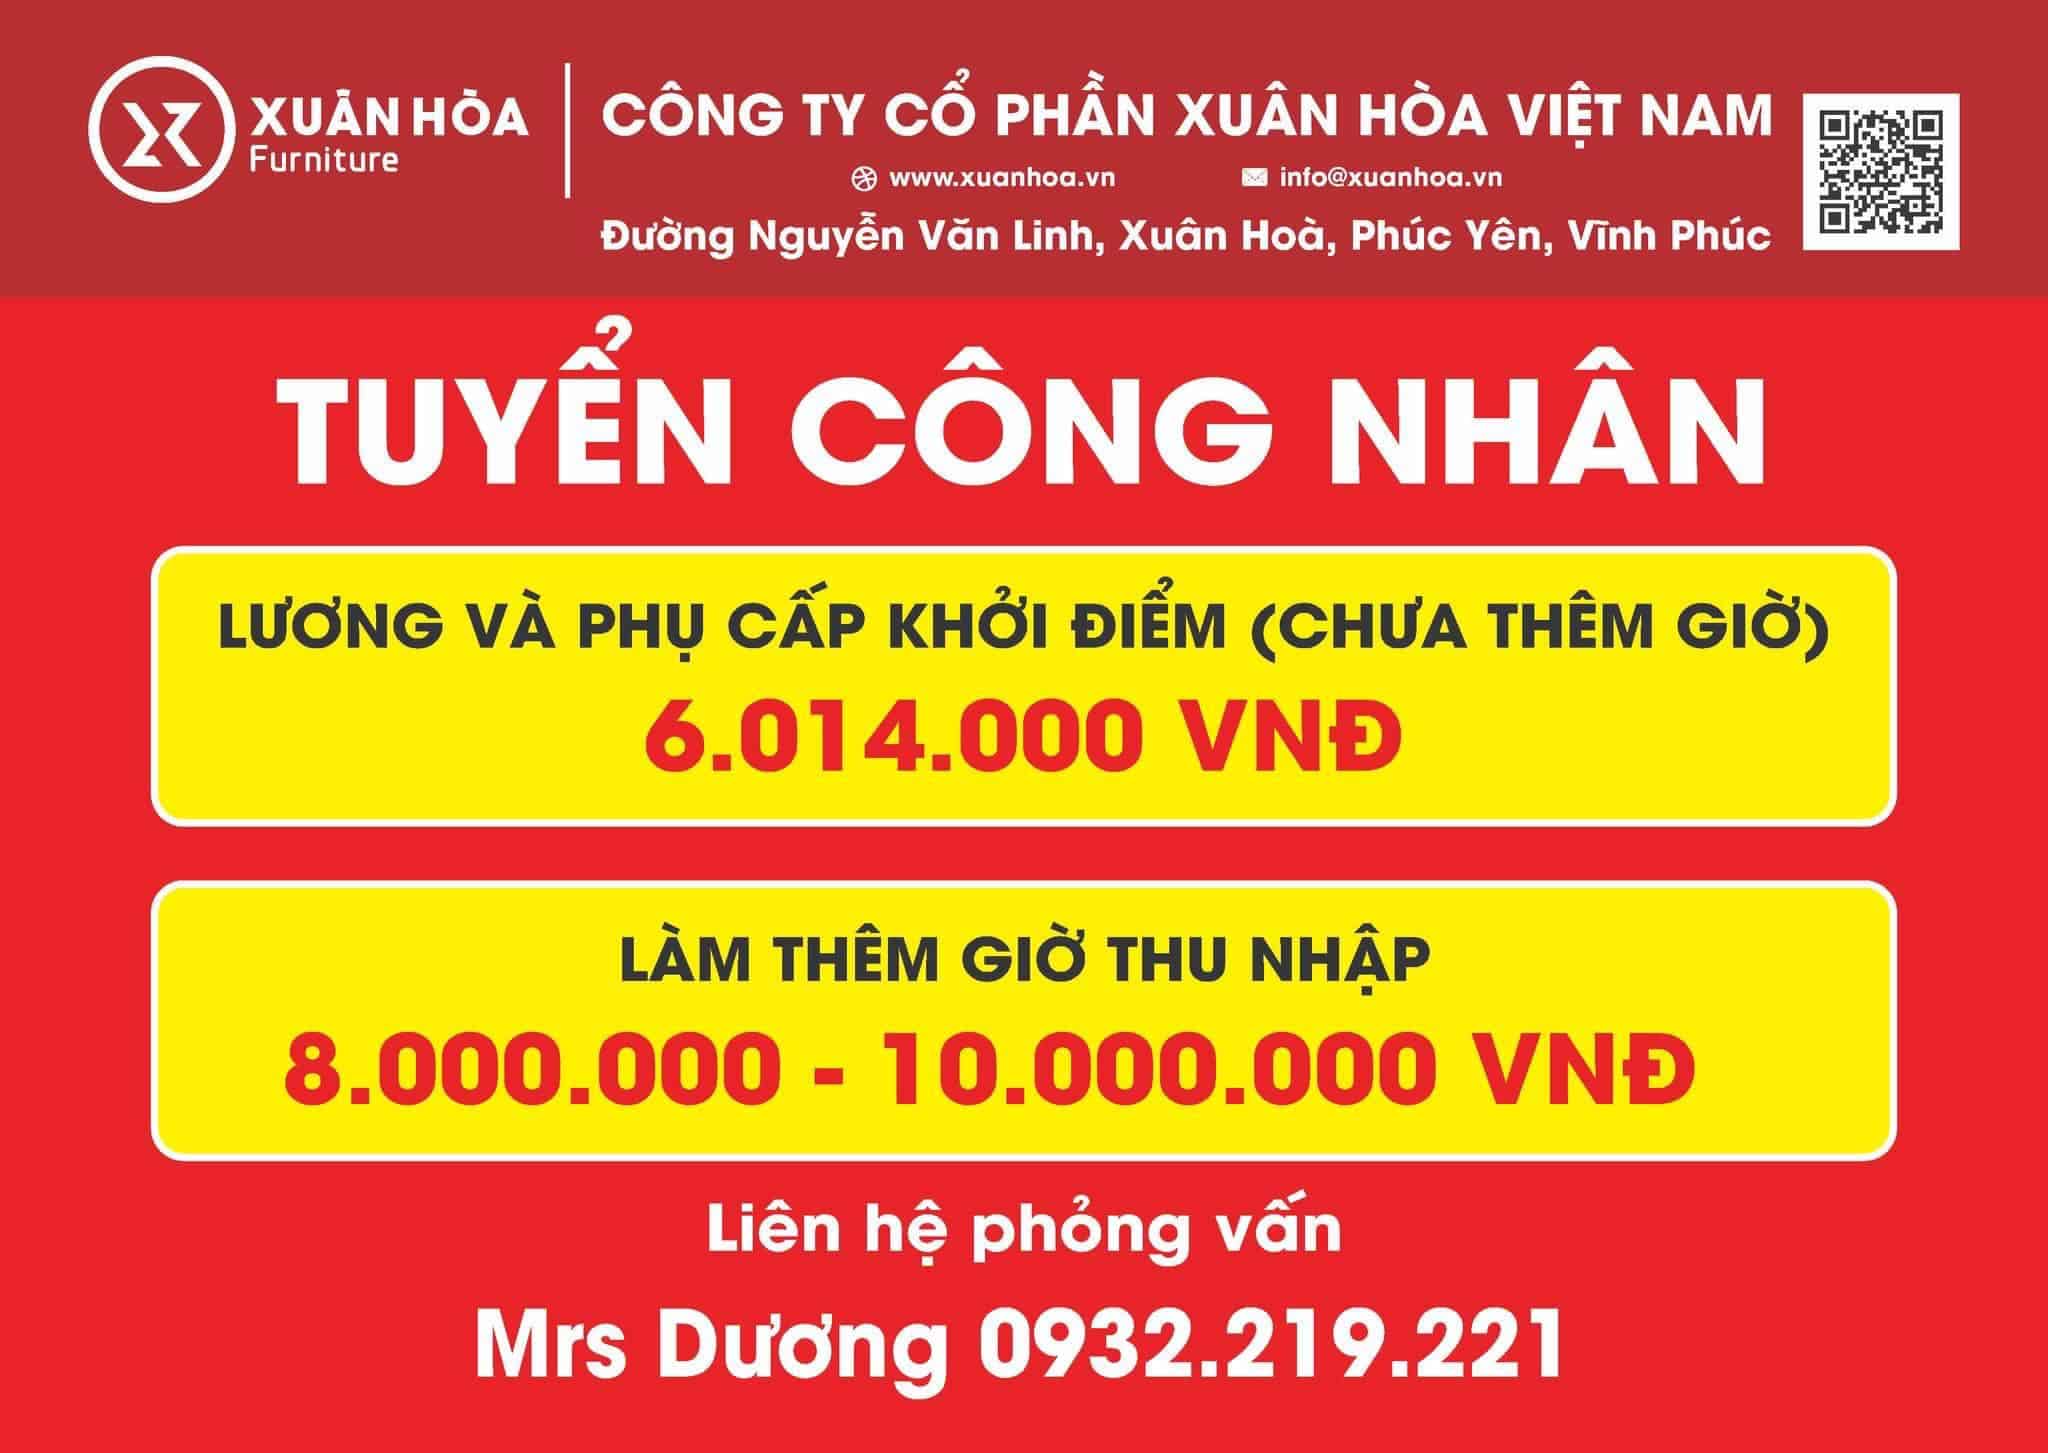 Nha May Cong Ty Co Phan Xuan Hoa Viet Nam Thong Bao Tuyen Lao Dong Pho Thong Chinh Thuc 7